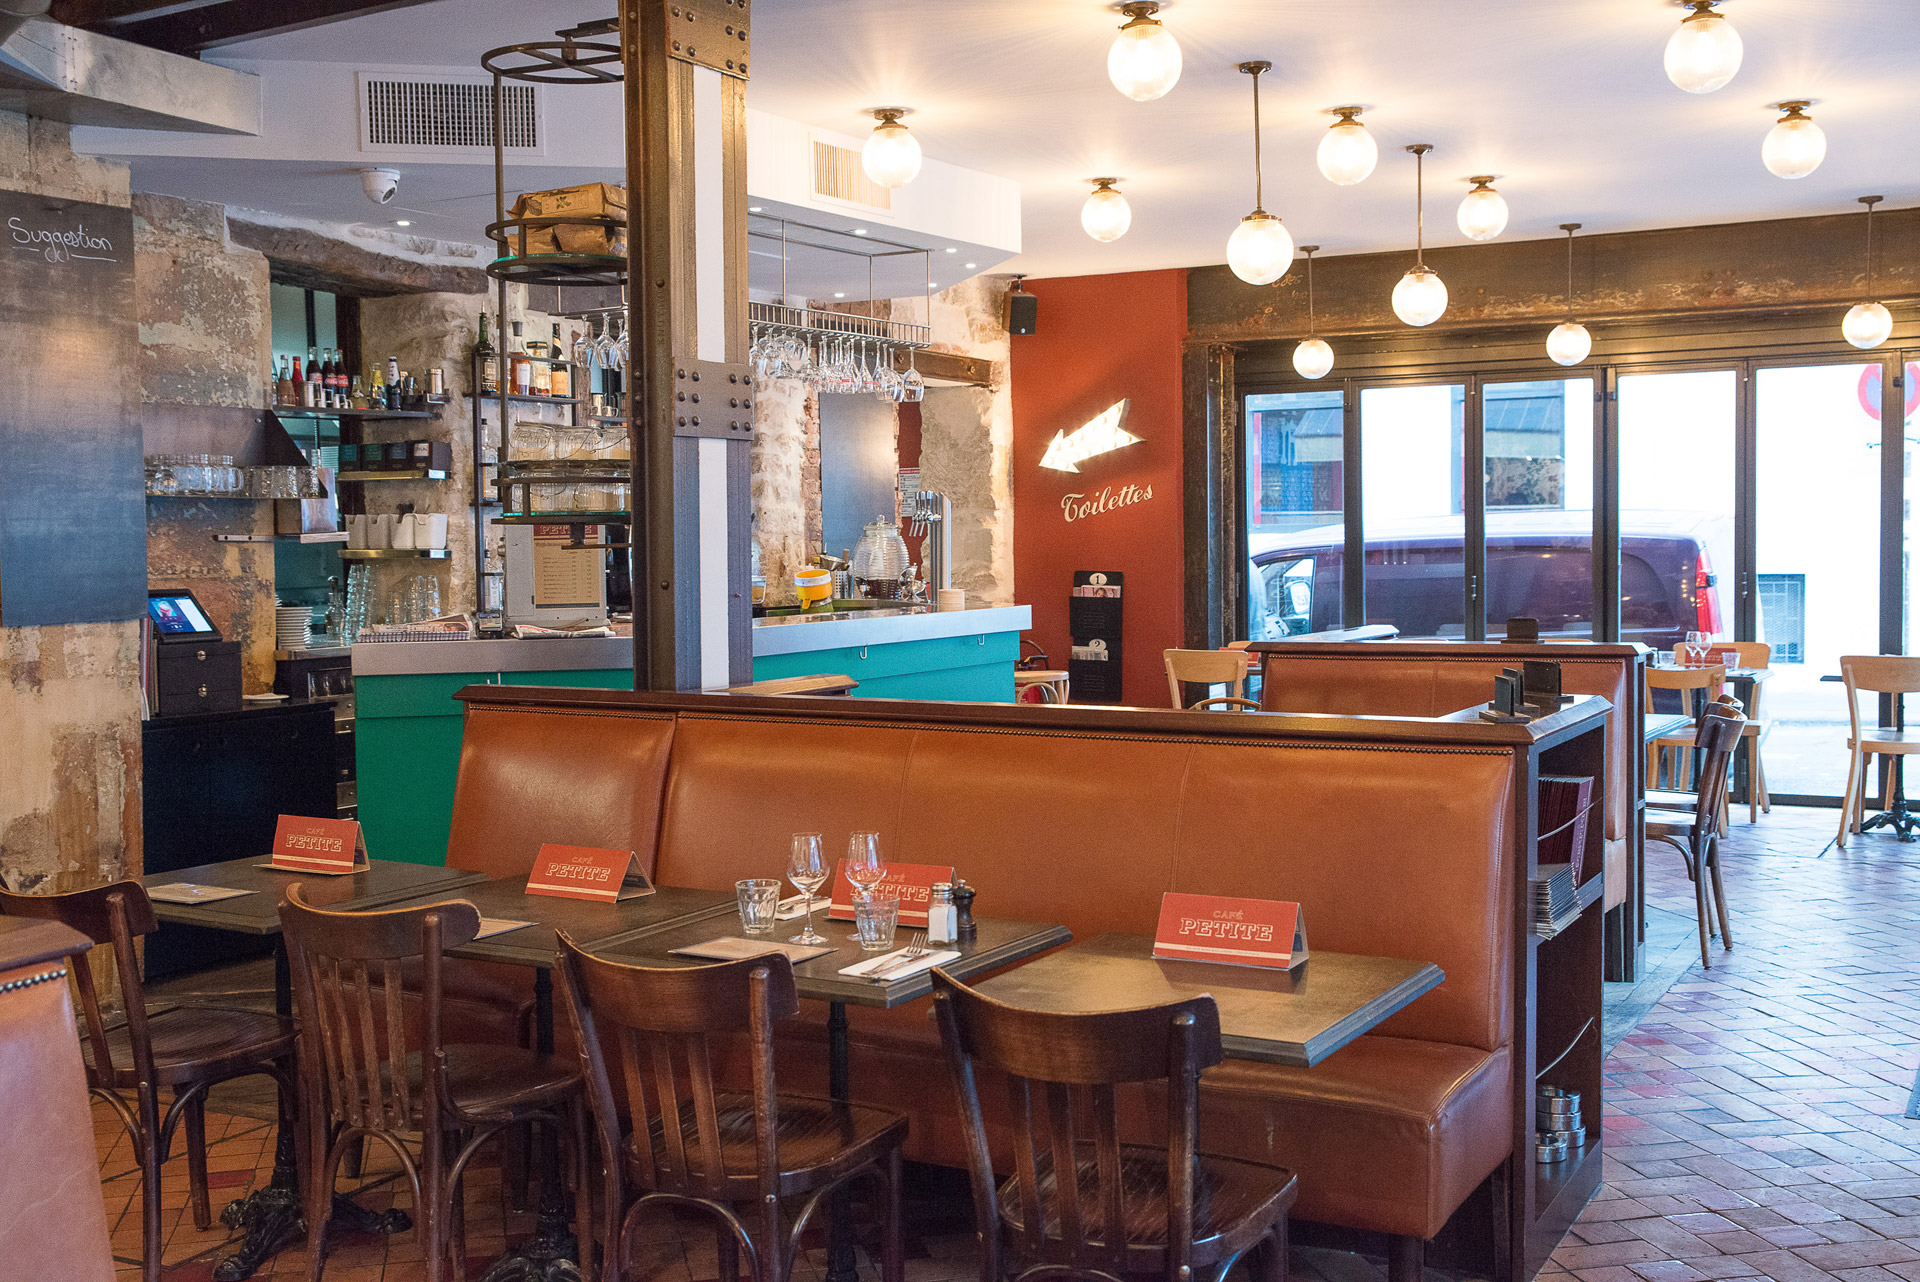 Enjoy the ultimate Parisian café experience under our ceiling lights at Café Petite